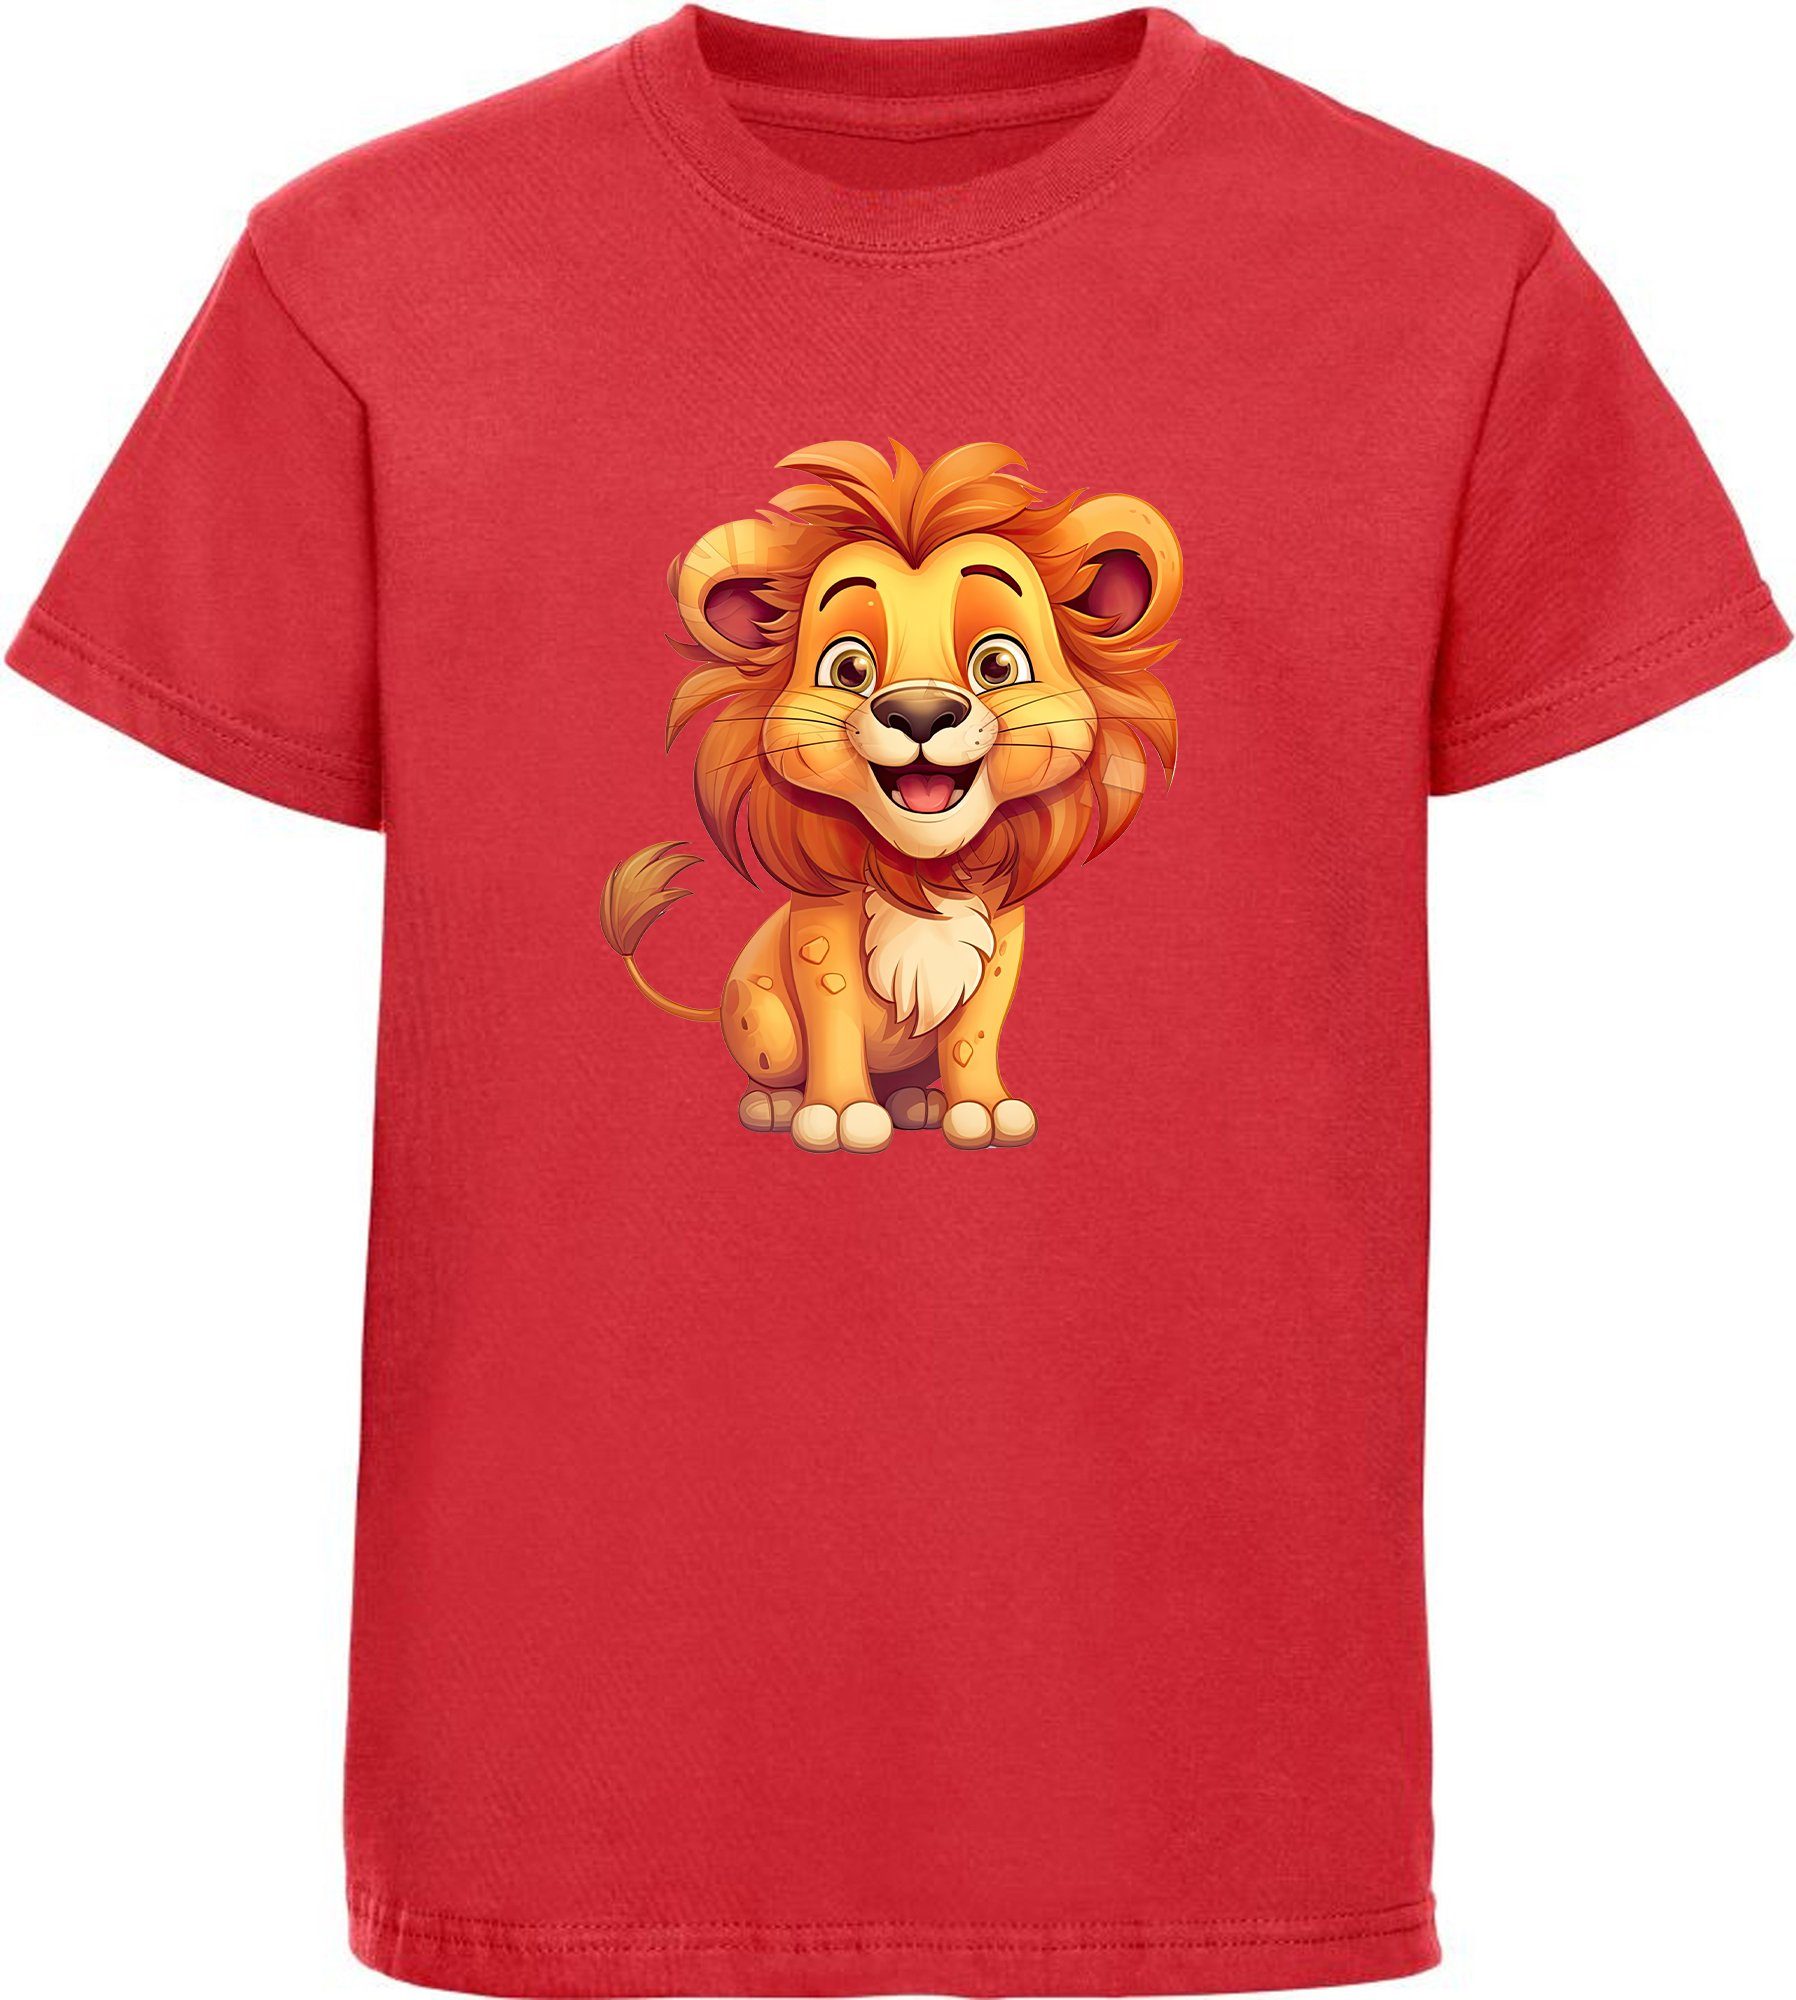 MyDesign24 T-Shirt Kinder Wildtier Aufdruck, mit Baby - Print bedruckt rot Löwe i275 Baumwollshirt Shirt